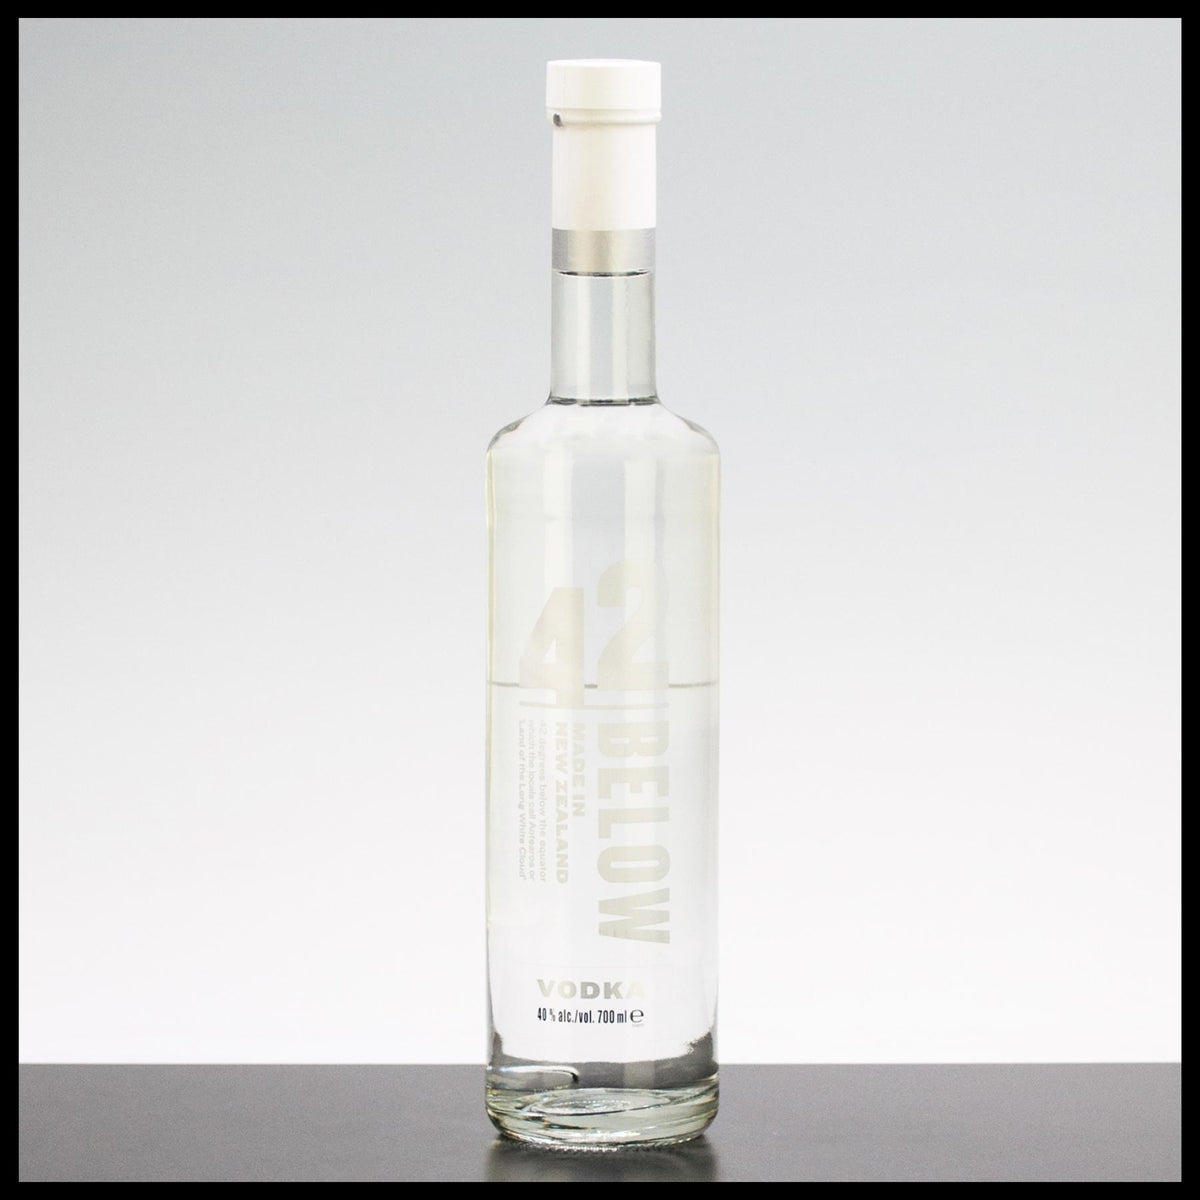 Superb Doppelmagnum 3,0-l-Flasche Vodka 37,5% Vol